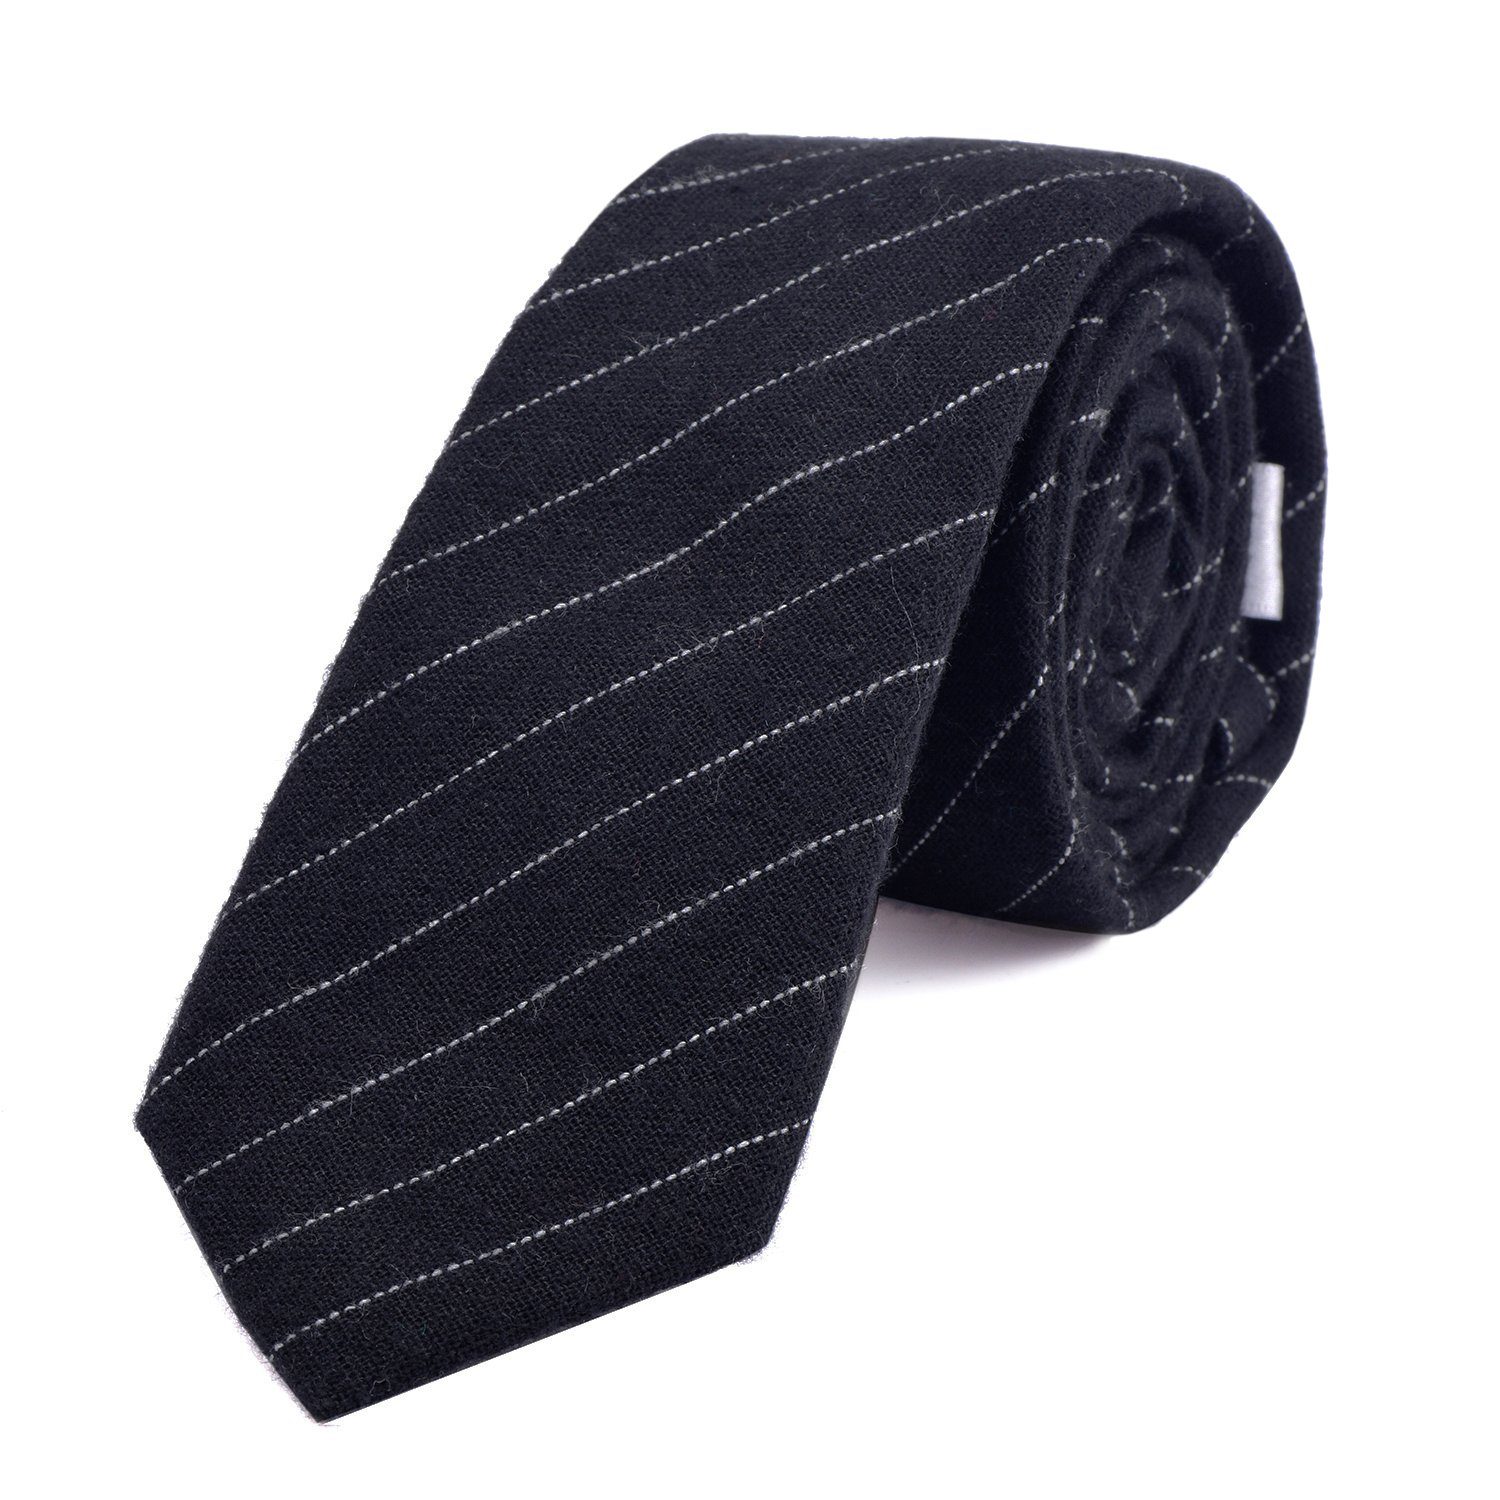 DonDon Krawatte Herren Krawatte 6 cm mit Karos oder Streifen (Packung, 1-St., 1x Krawatte) Baumwolle, kariert oder gestreift, für Büro oder festliche Veranstaltungen schwarz gestreift 2